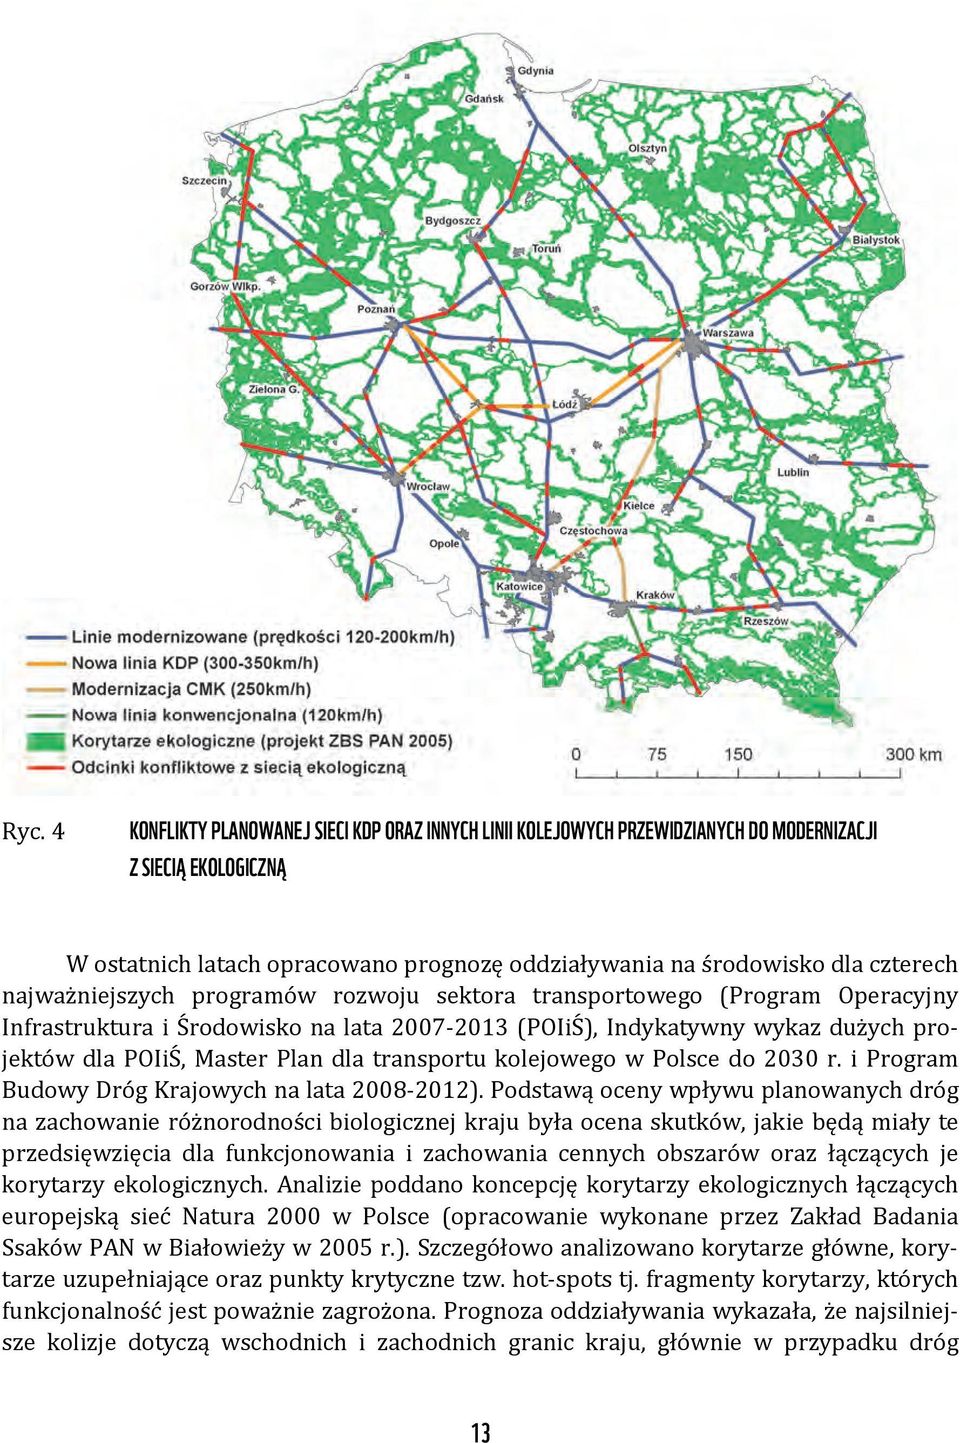 transportu kolejowego w Polsce do 2030 r. i Program Budowy Dróg Krajowych na lata 2008-2012).